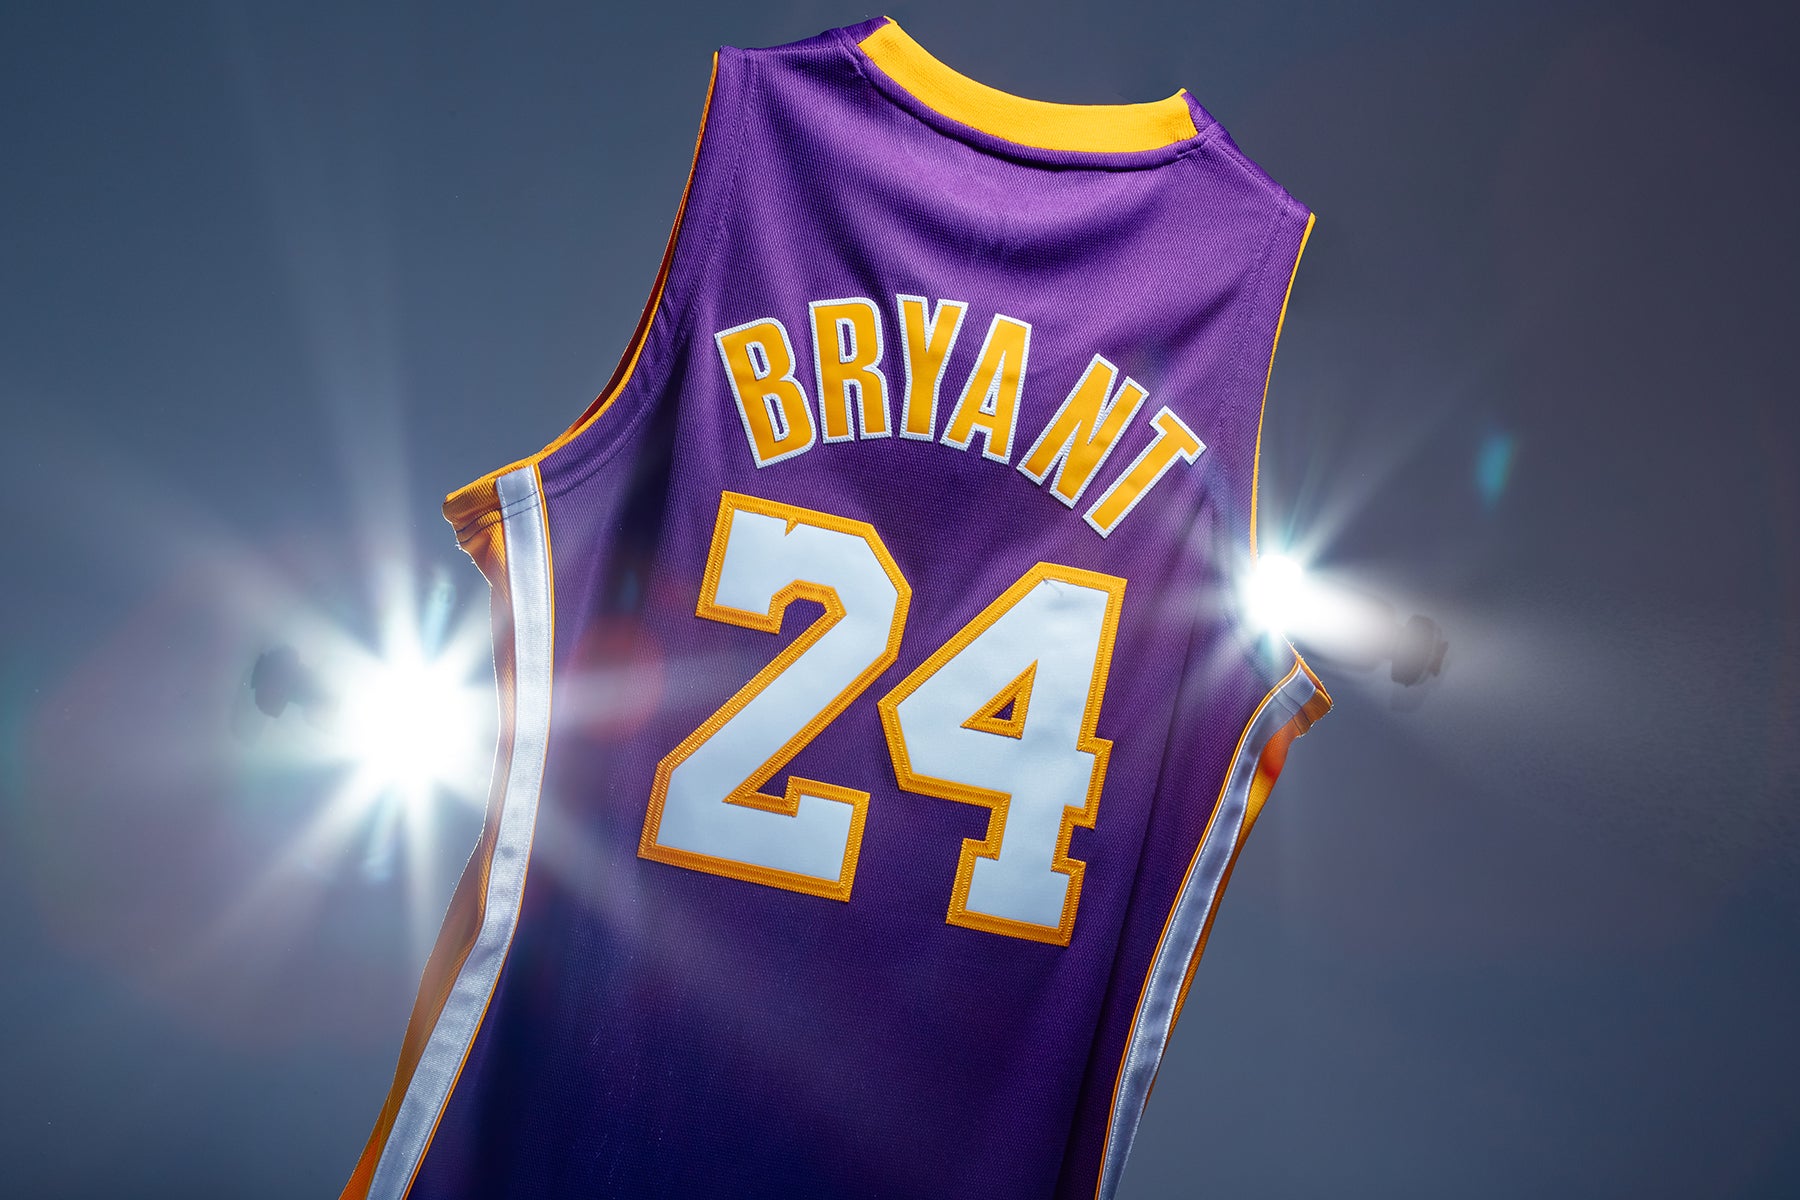 Kobe Bryant Jerseys for sale in Philadelphia, Pennsylvania